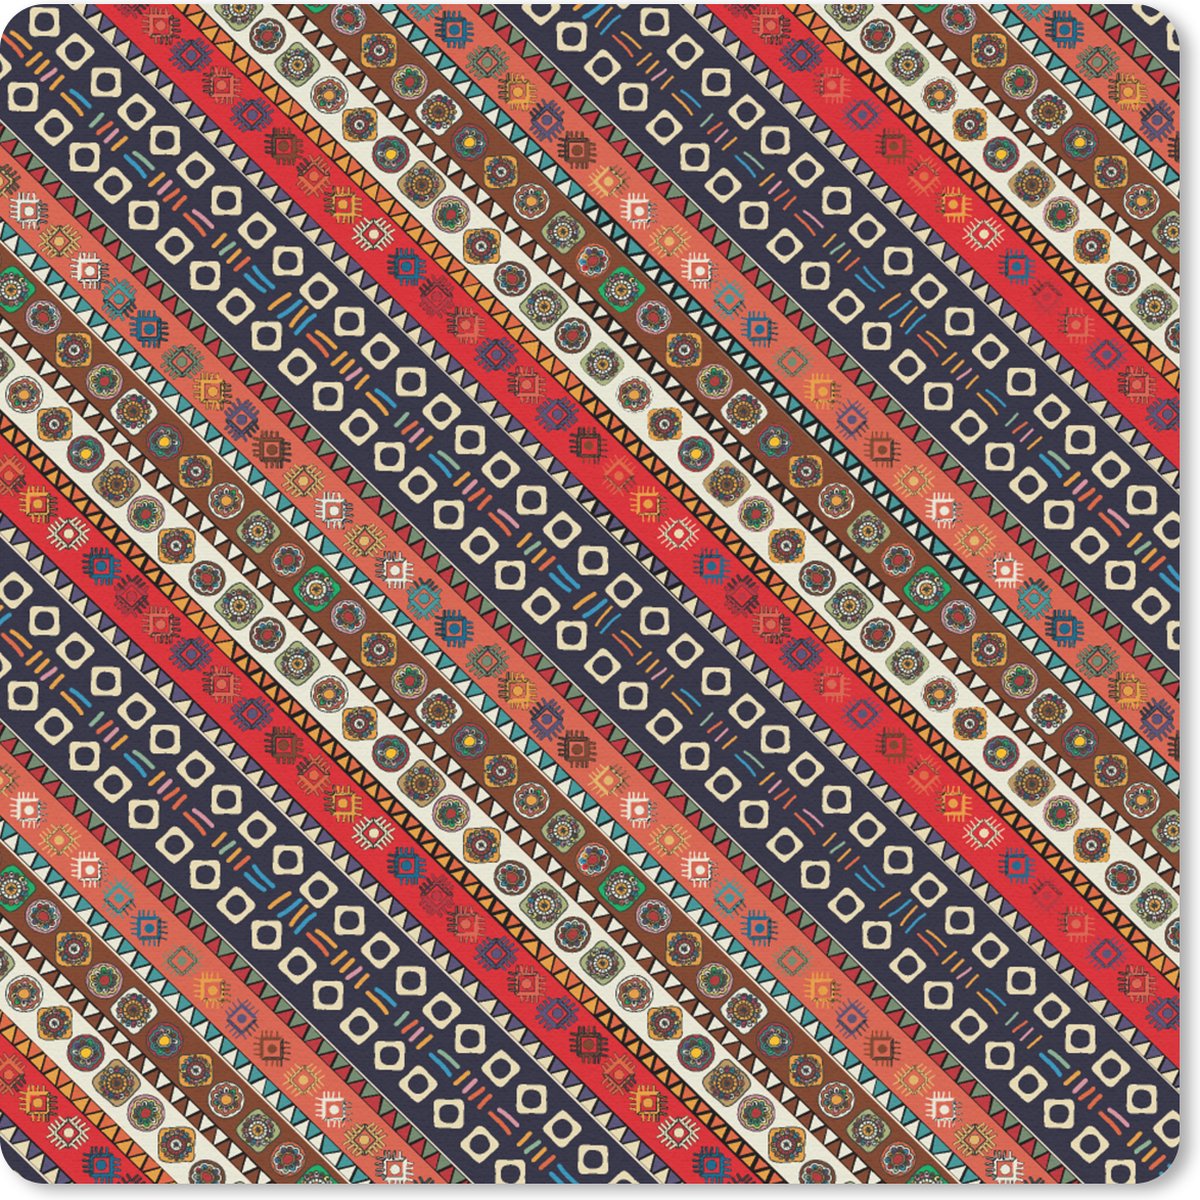 Muismat Klein - Afrika - Patronen - Abstract - 20x20 cm